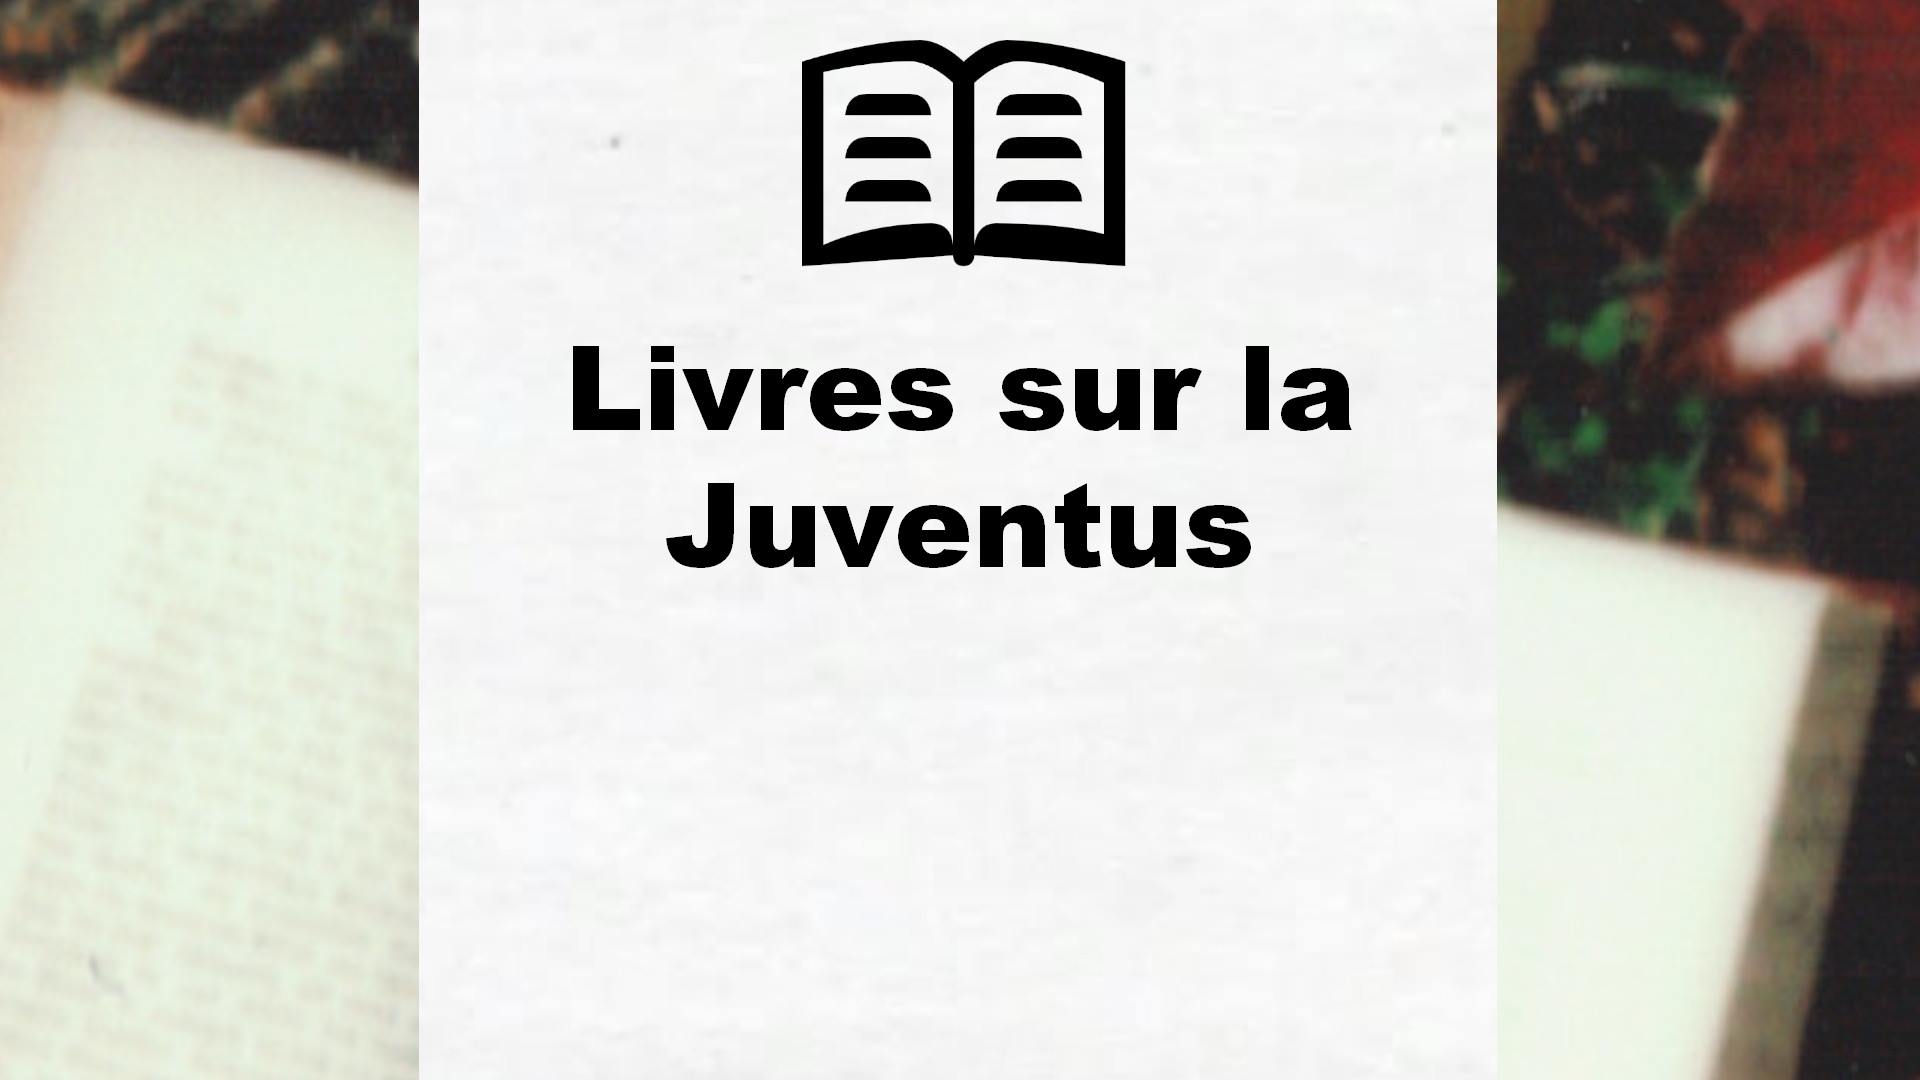 Livres sur la Juventus